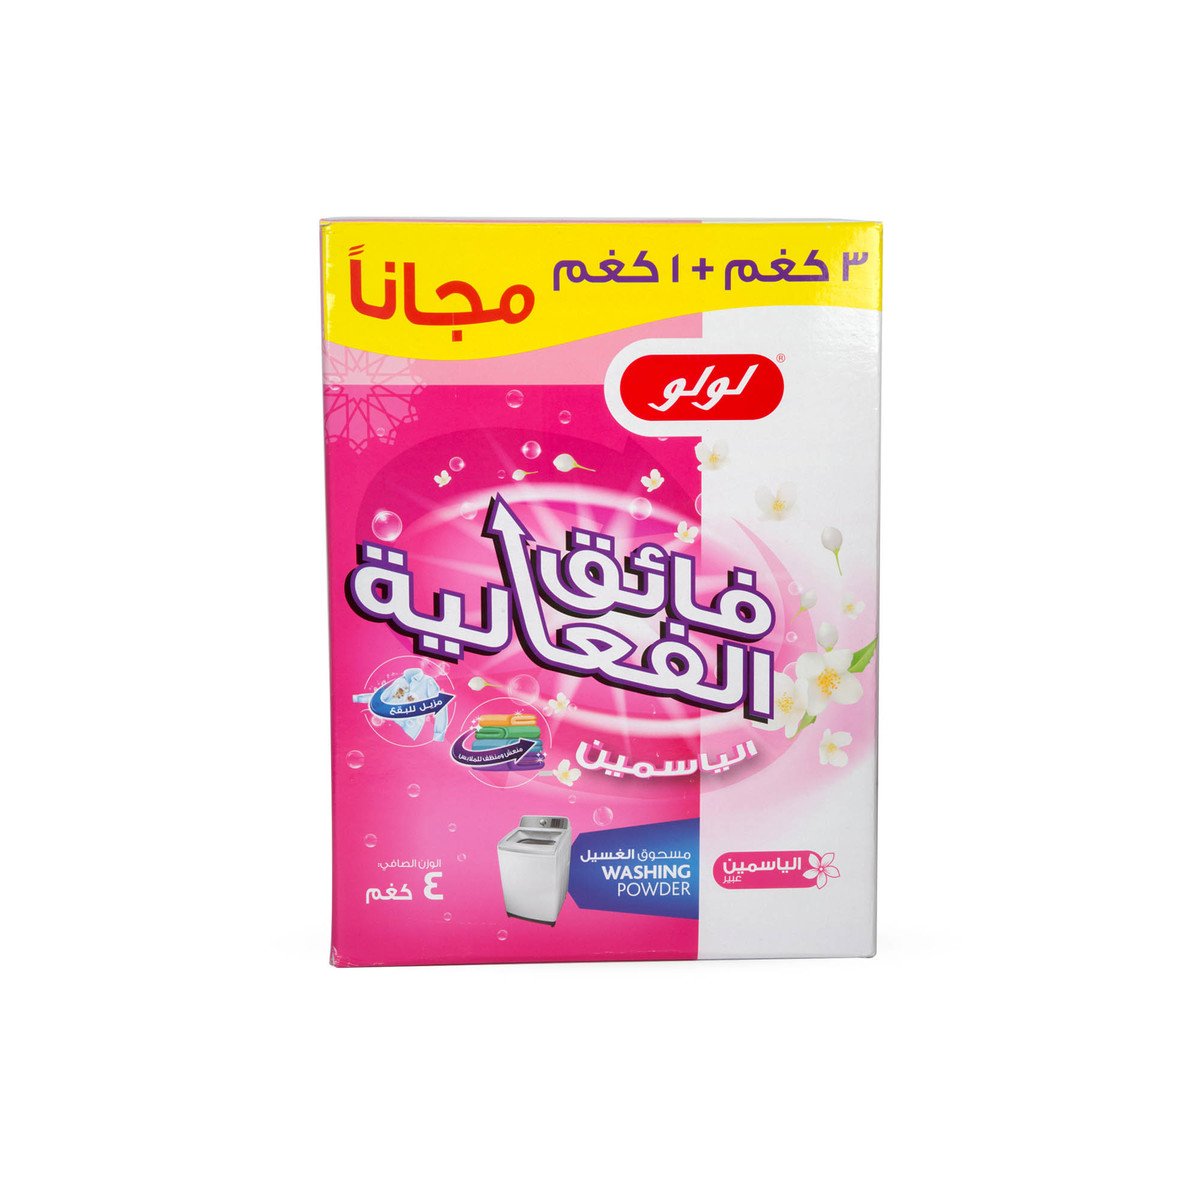 LuLu Detergent Powder Jasmine Fragrance 3kg + 1kg Free